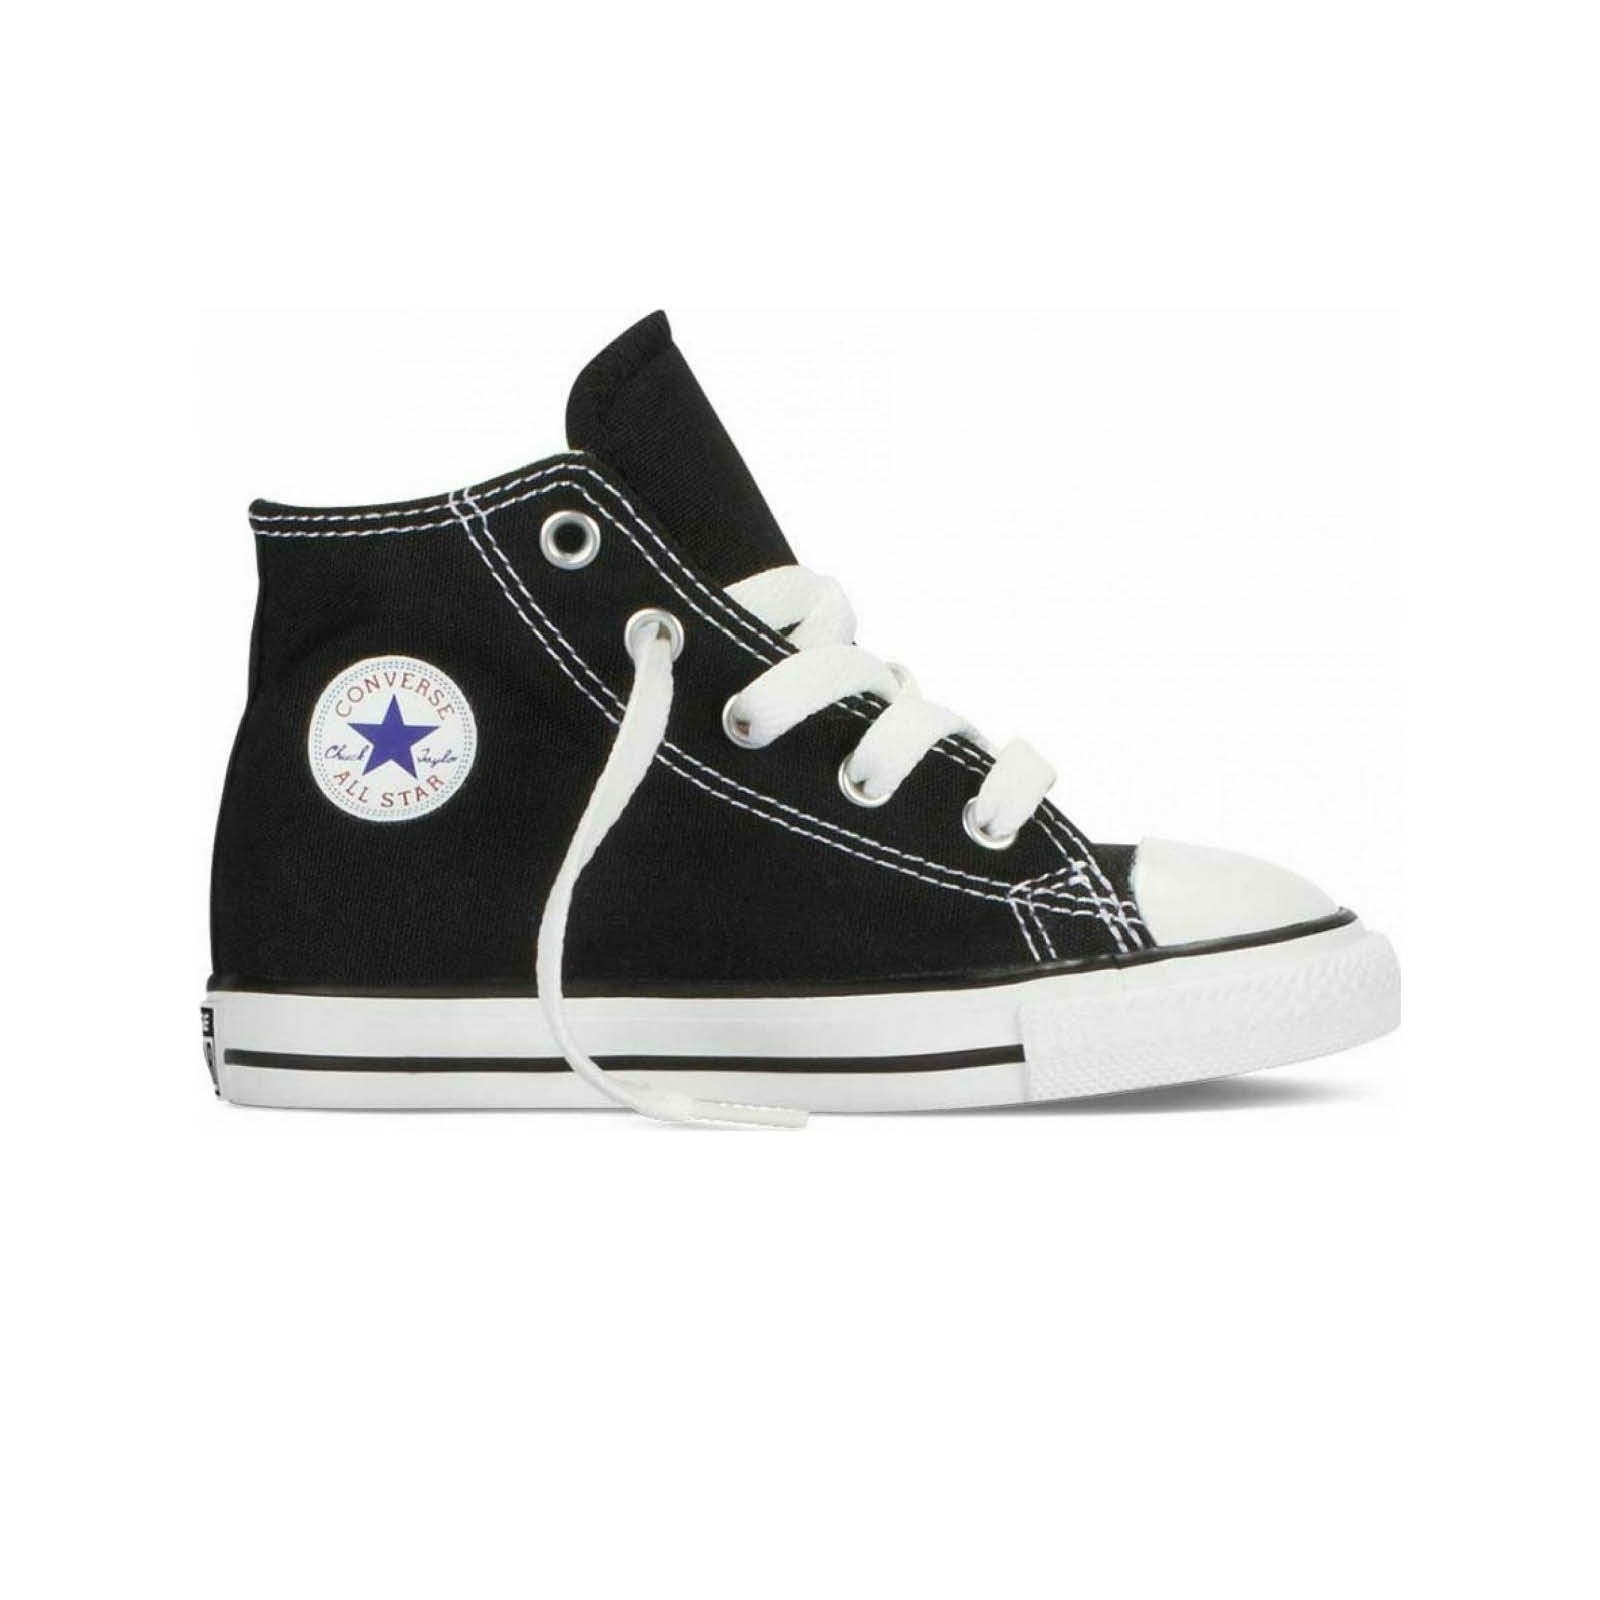 Παιδικά > Παπούτσια > Sneaker > Μποτάκι High Cut Converse - CHUCK TAYLOR ALL STAR - 001-BLACK